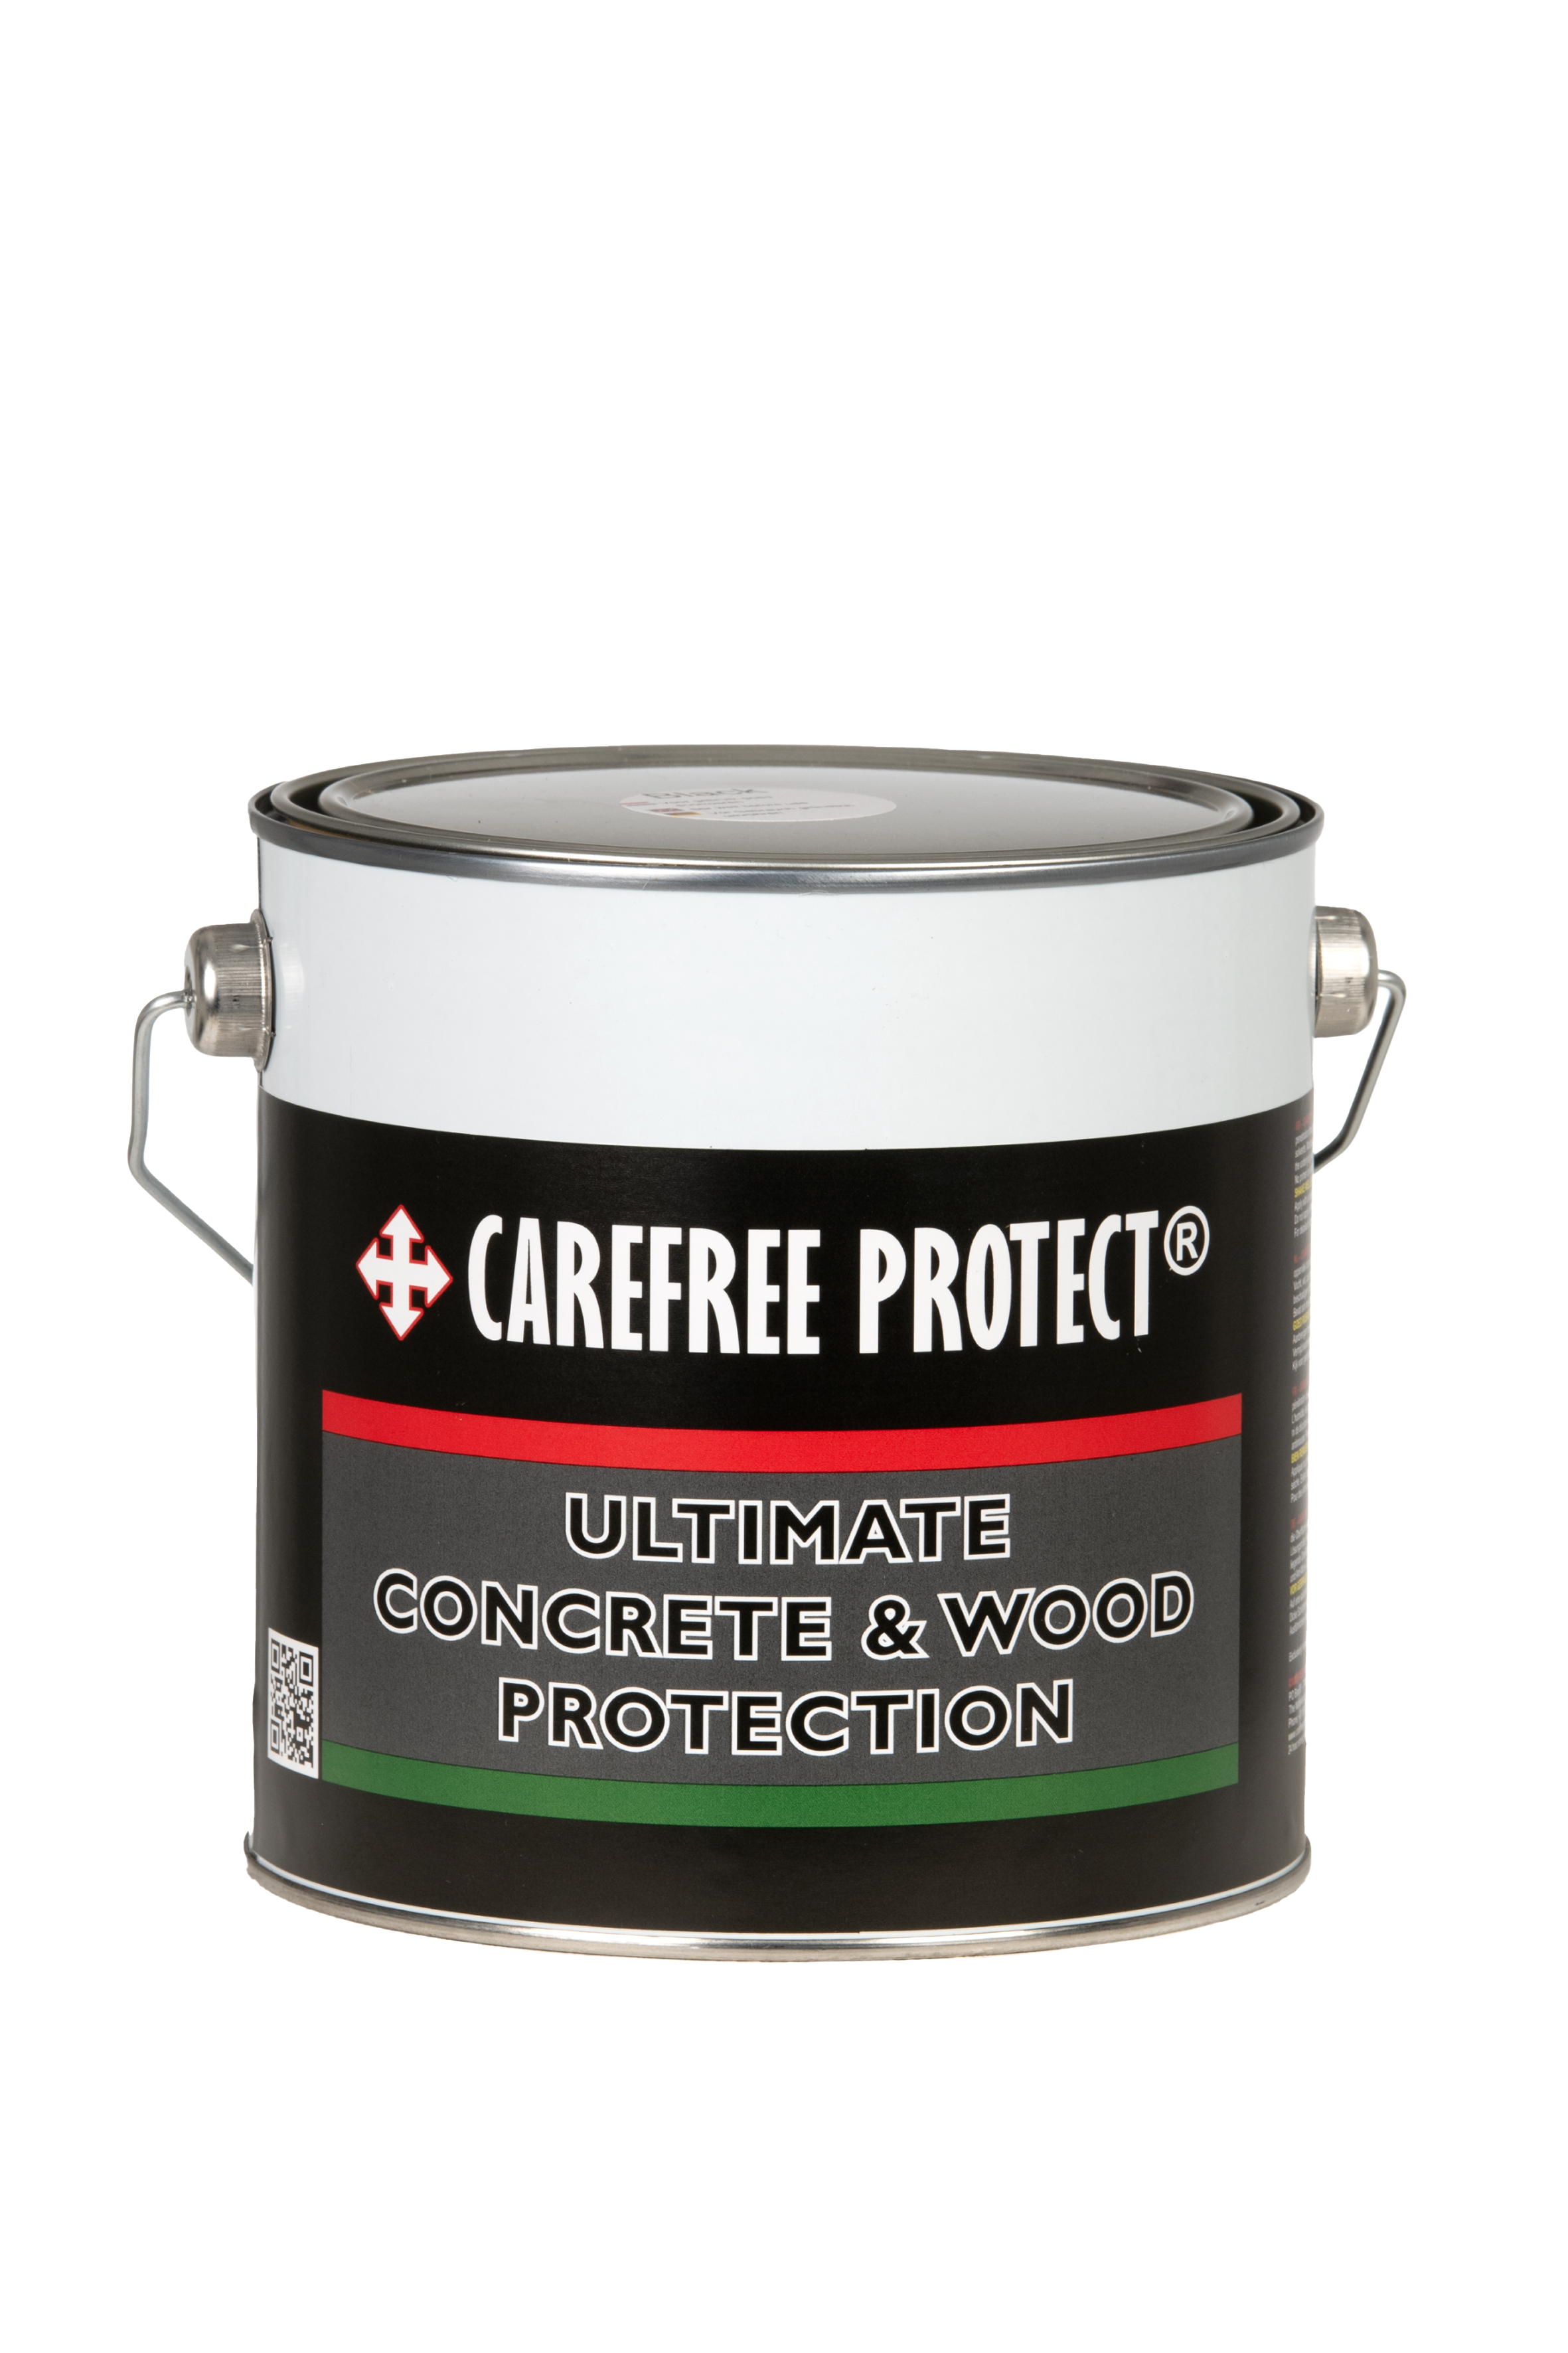 Carefree Protect vlonder olie 2,5 ltr